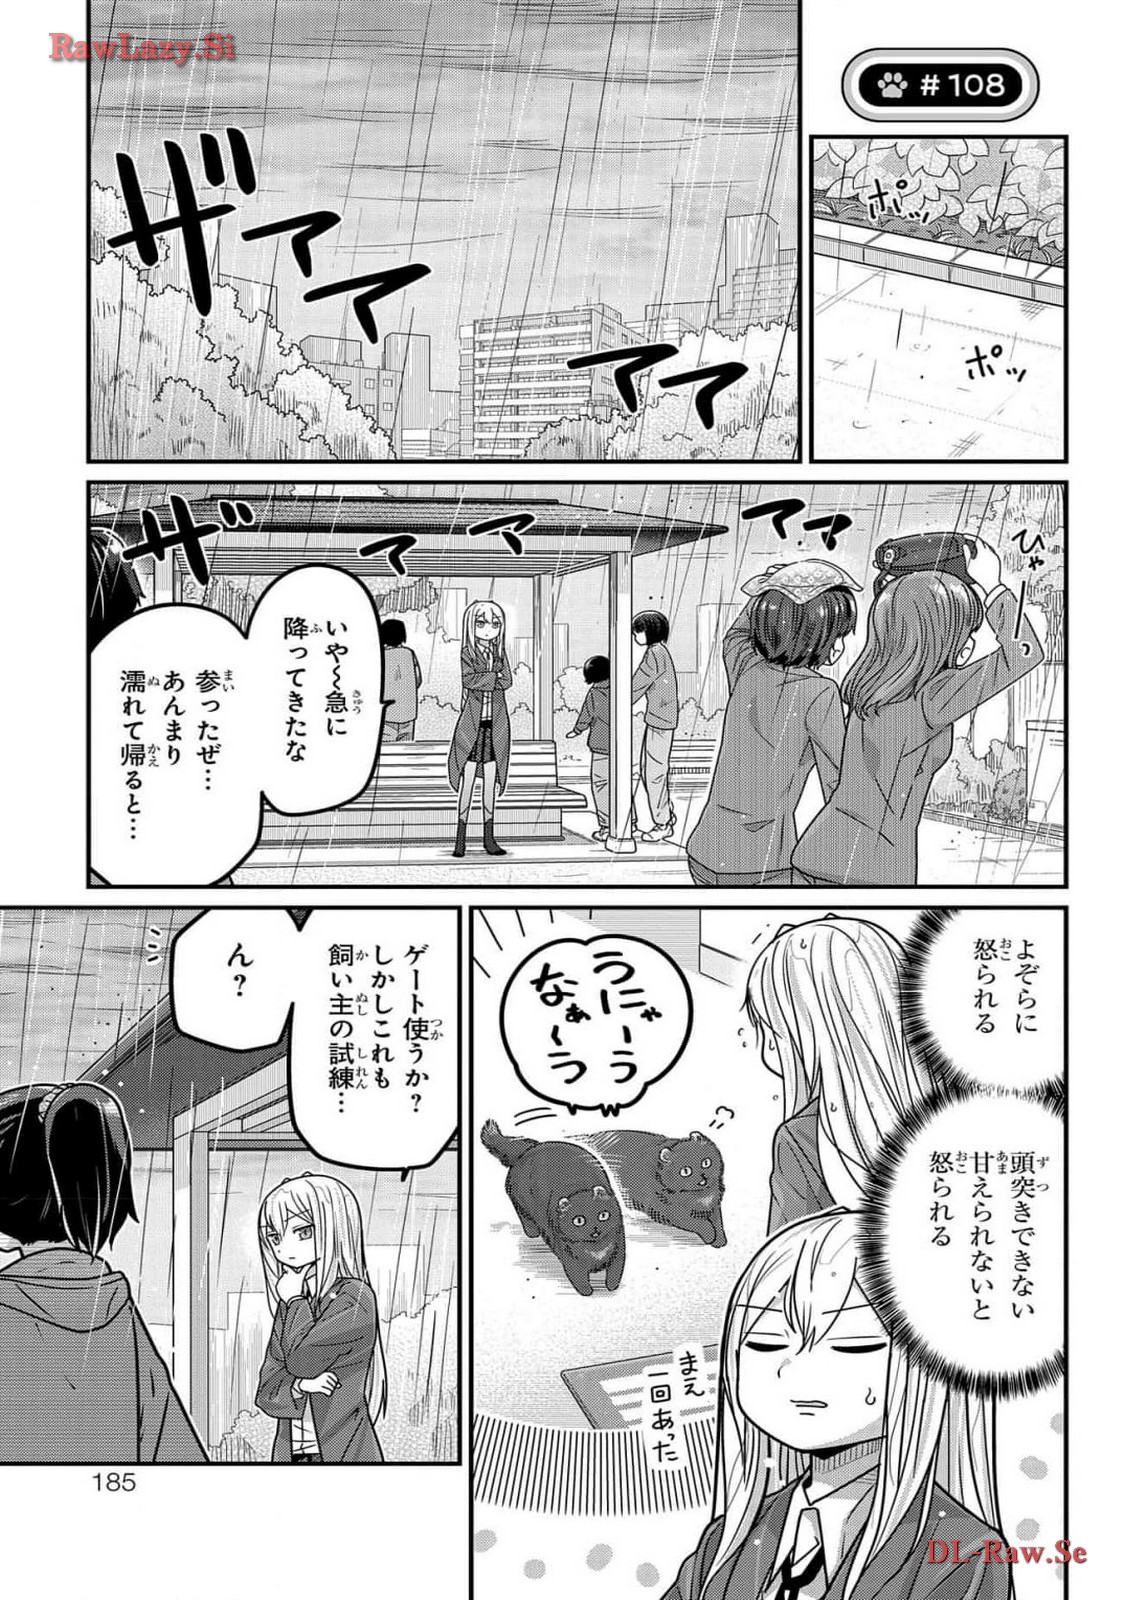 Kawaisugi Crisis - Chapter 108 - Page 1